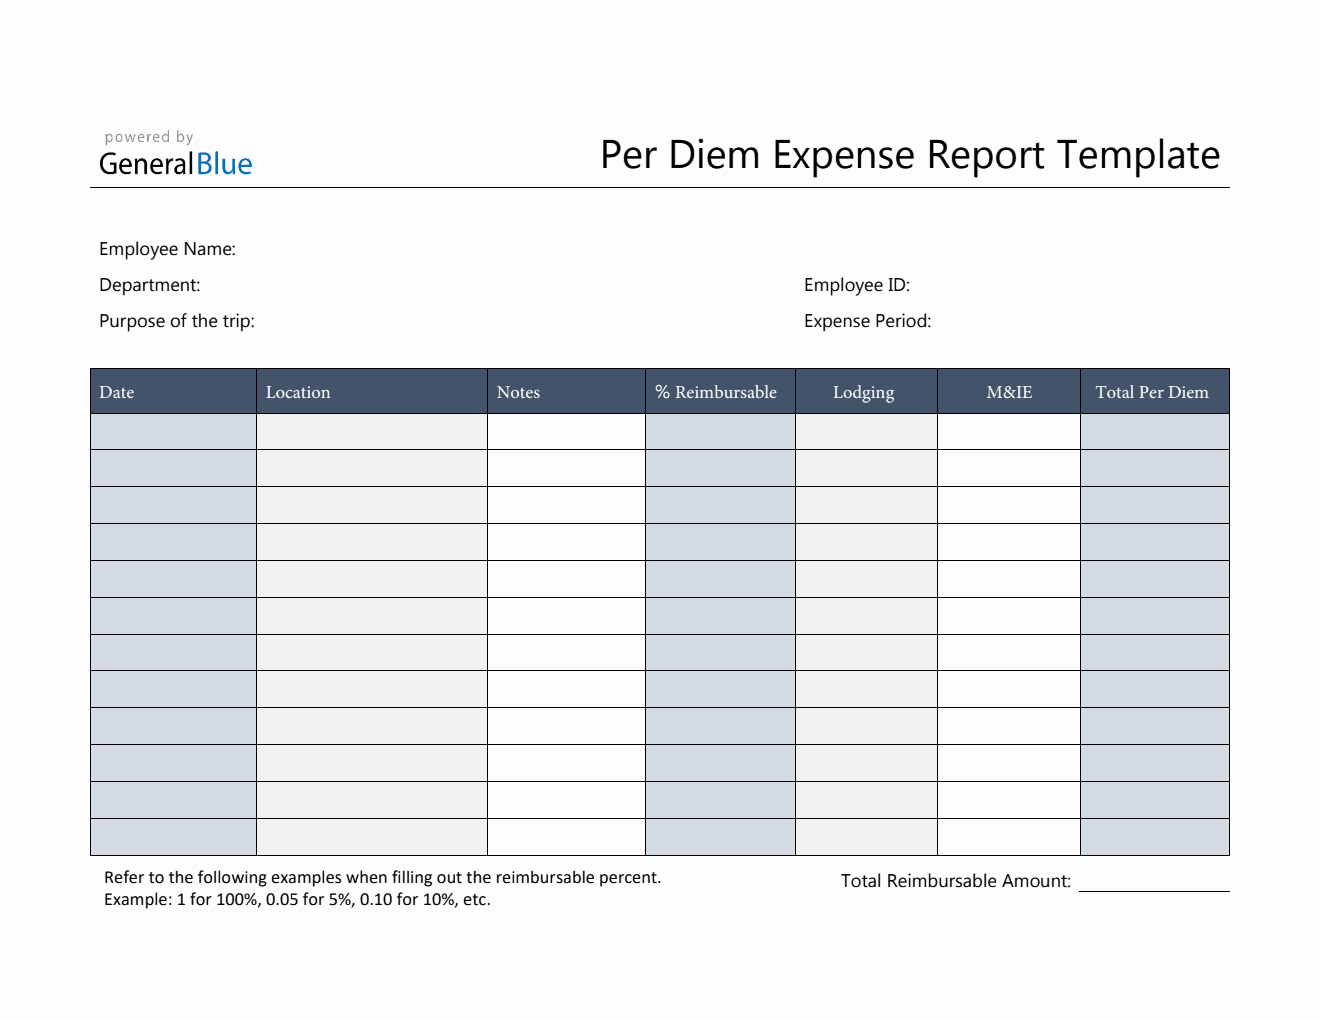 Editable Per Diem Expense Report in PDF